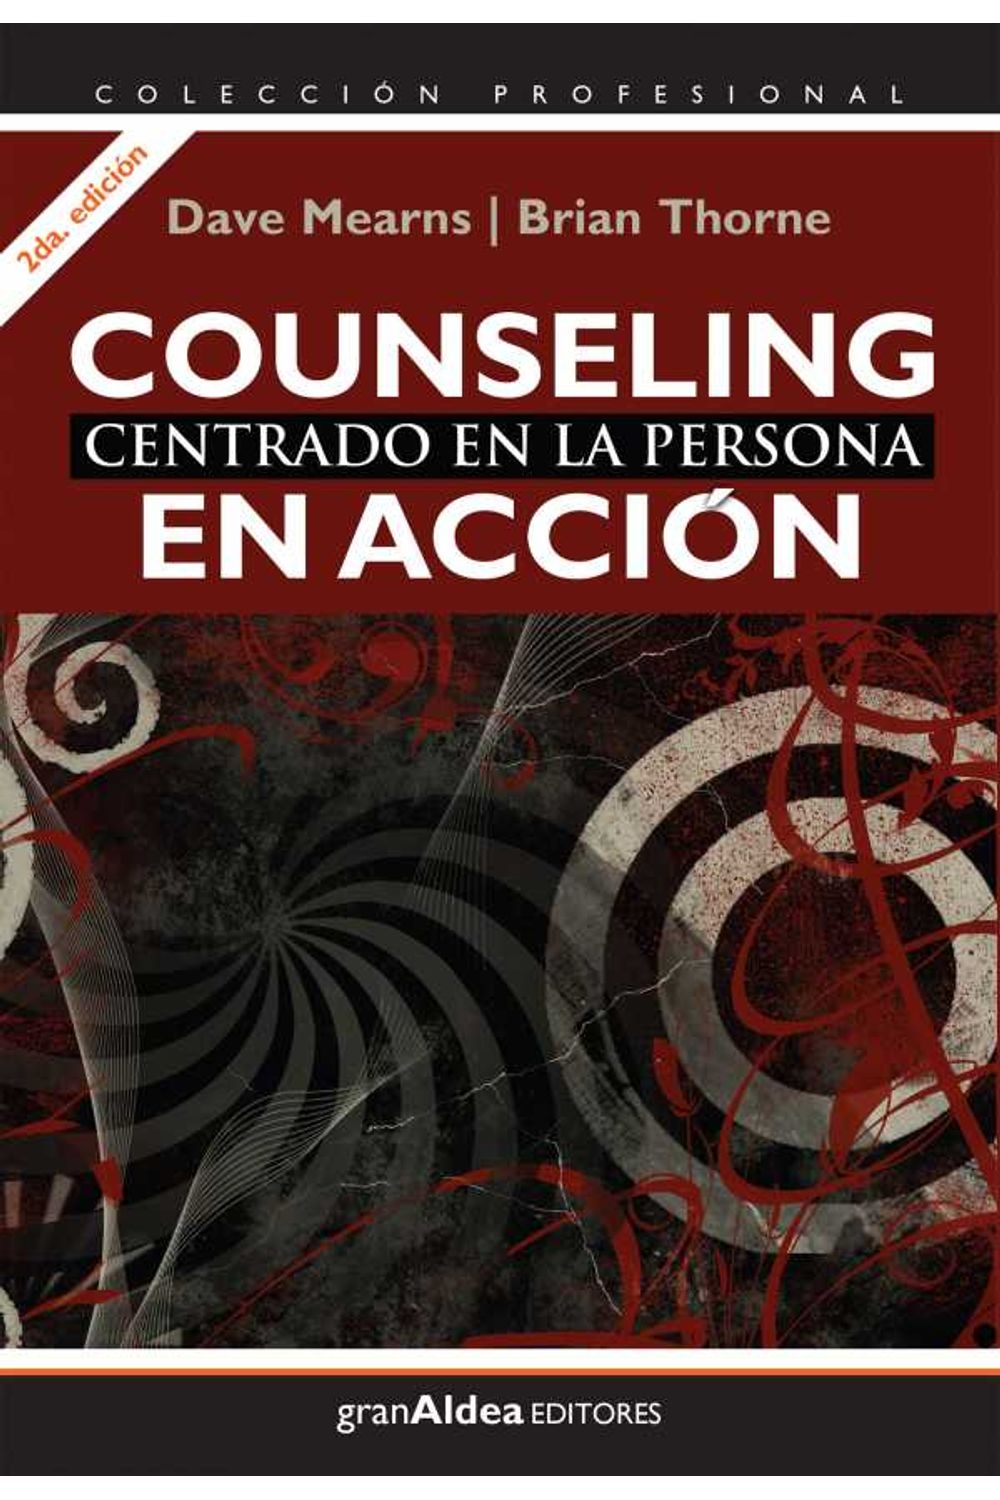 bw-counseling-centrado-en-la-persona-gran-aldea-editores-9789871301959